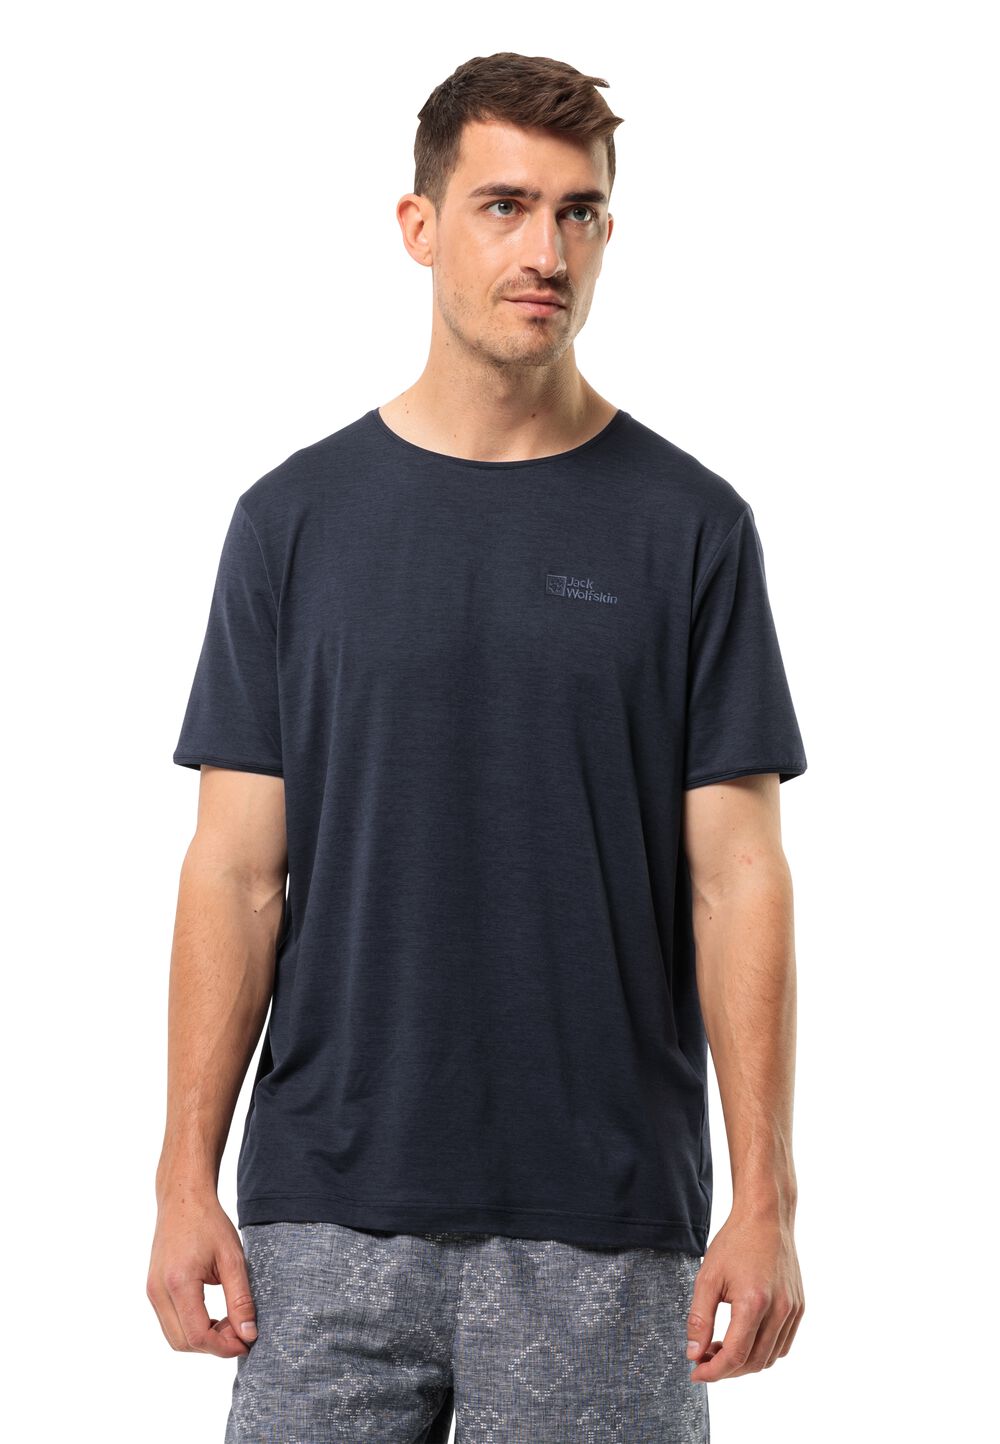 Jack Wolfskin Travel T-Shirt Men Functioneel shirt Heren XL blue night blue